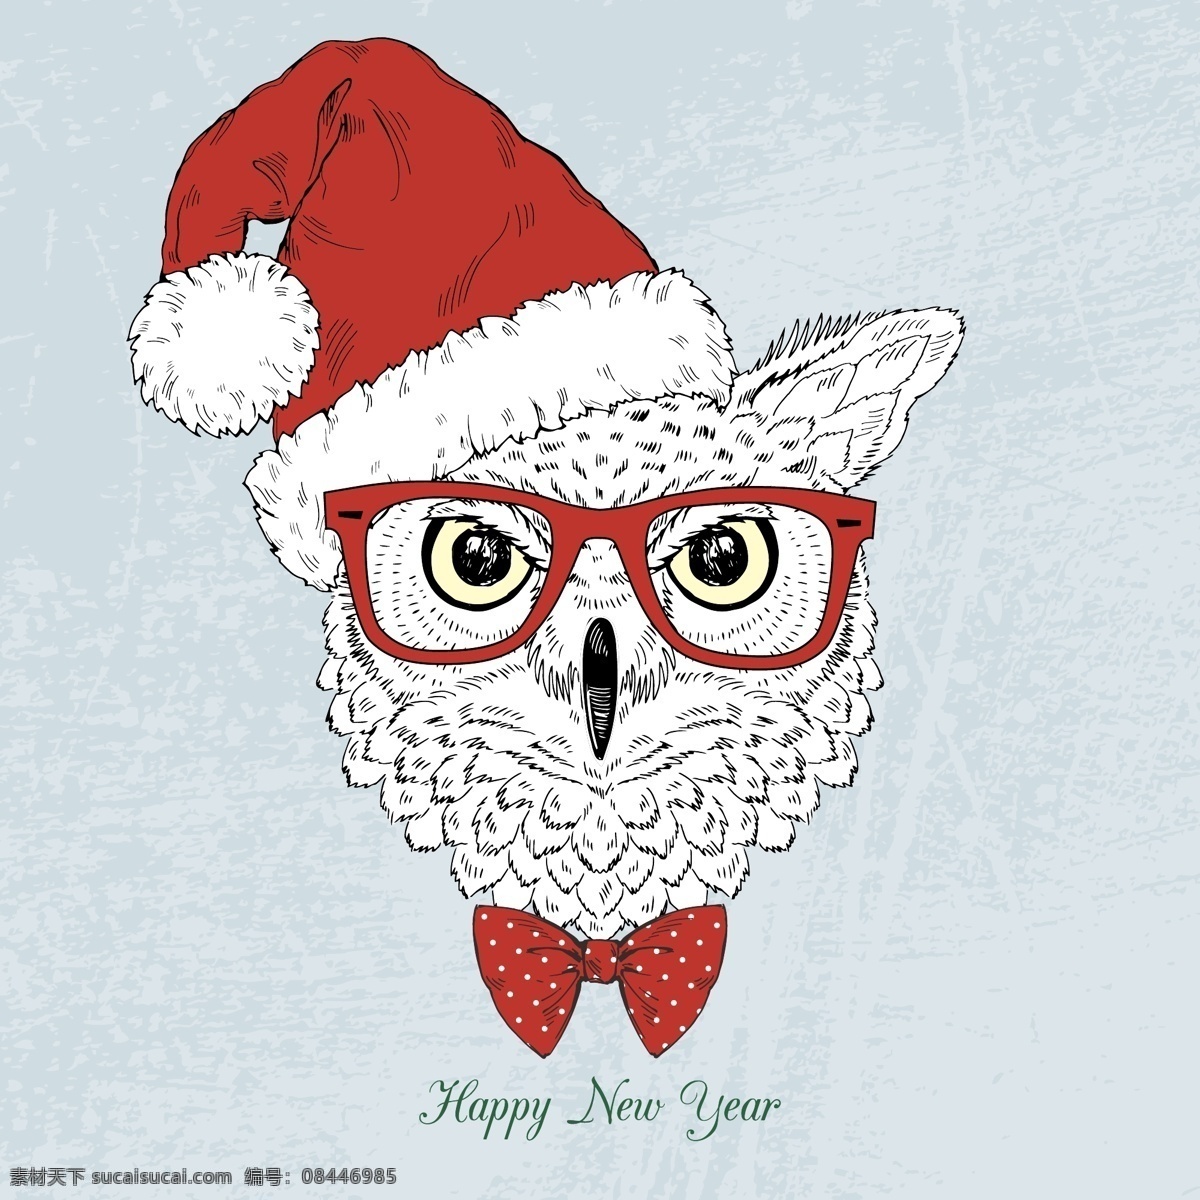 猫头鹰圣诞装 猫头鹰 圣诞装 眼镜 领结 圣诞帽 时尚动物 动物人物 动物 机器人 底纹边框 背景底纹